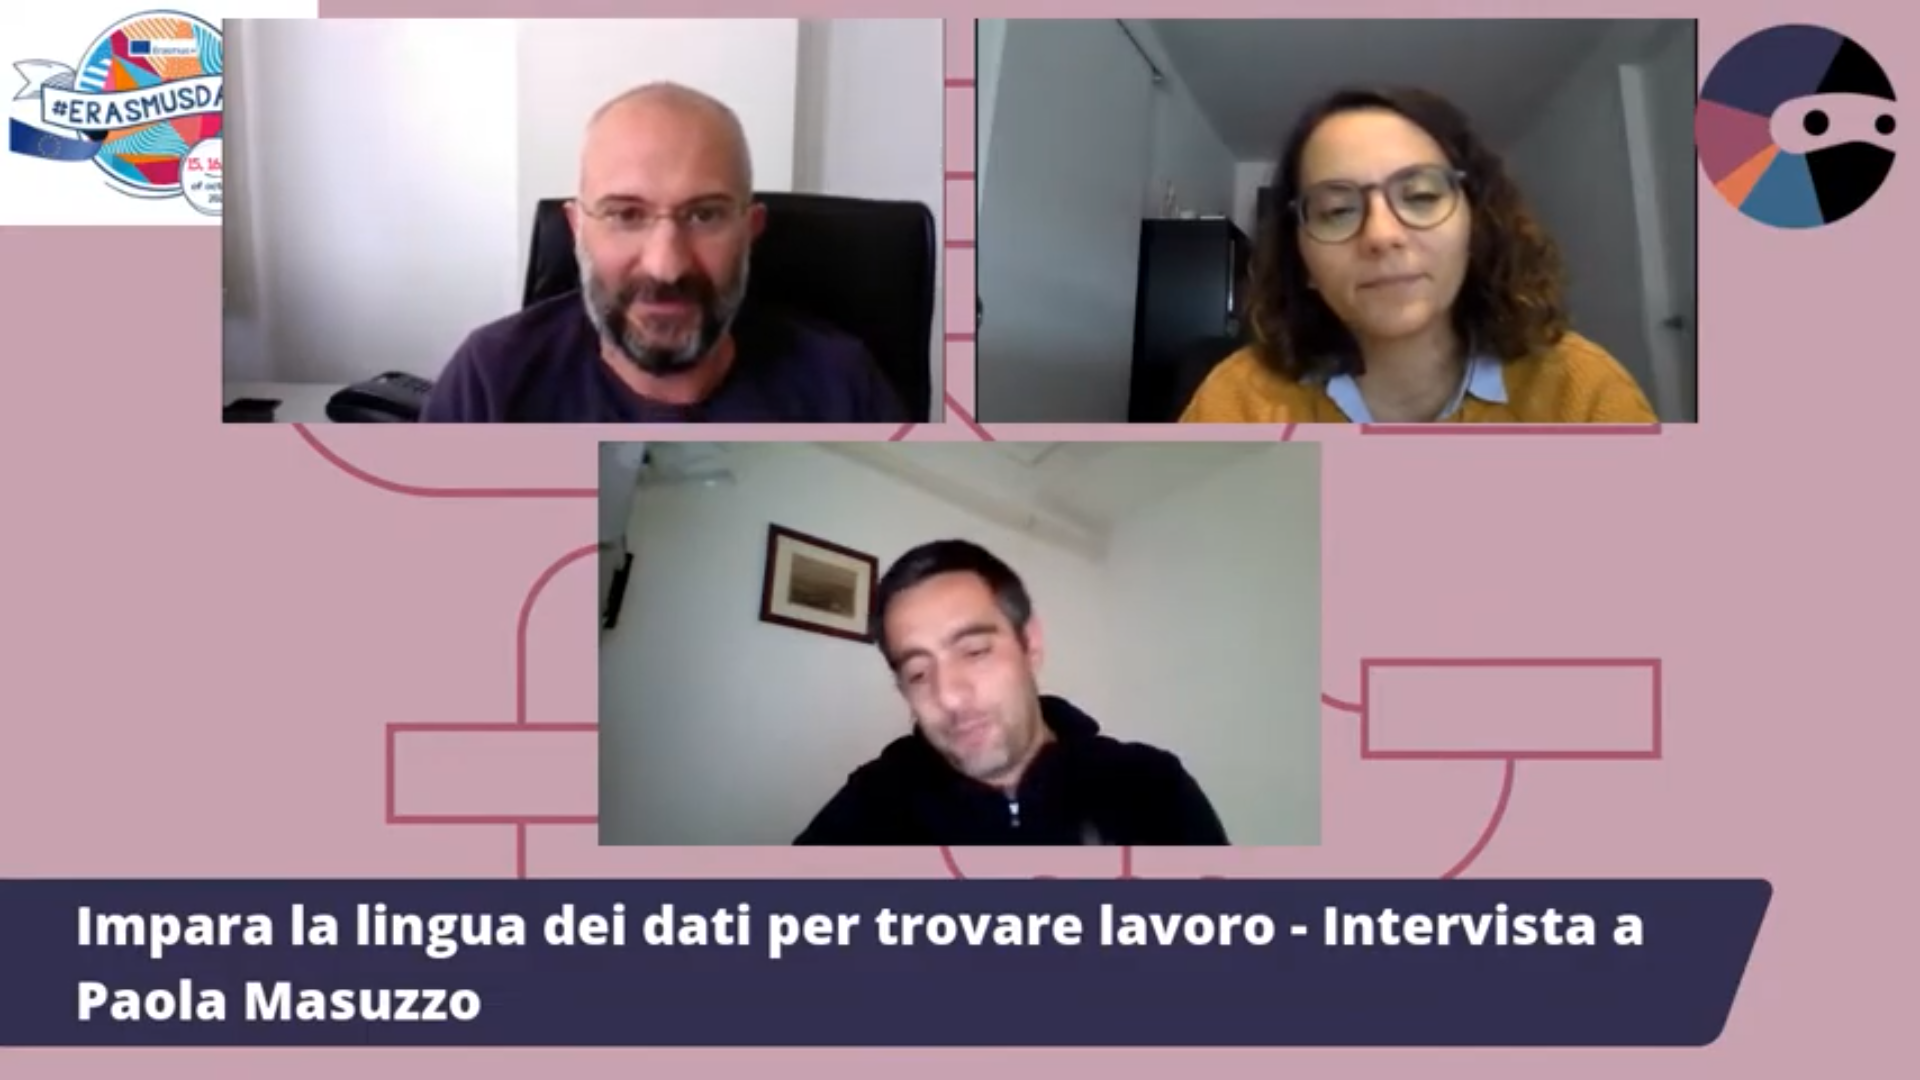 Imparare la lingua dei dati per trovare lavoro - Intervista a Paola Masuzzo